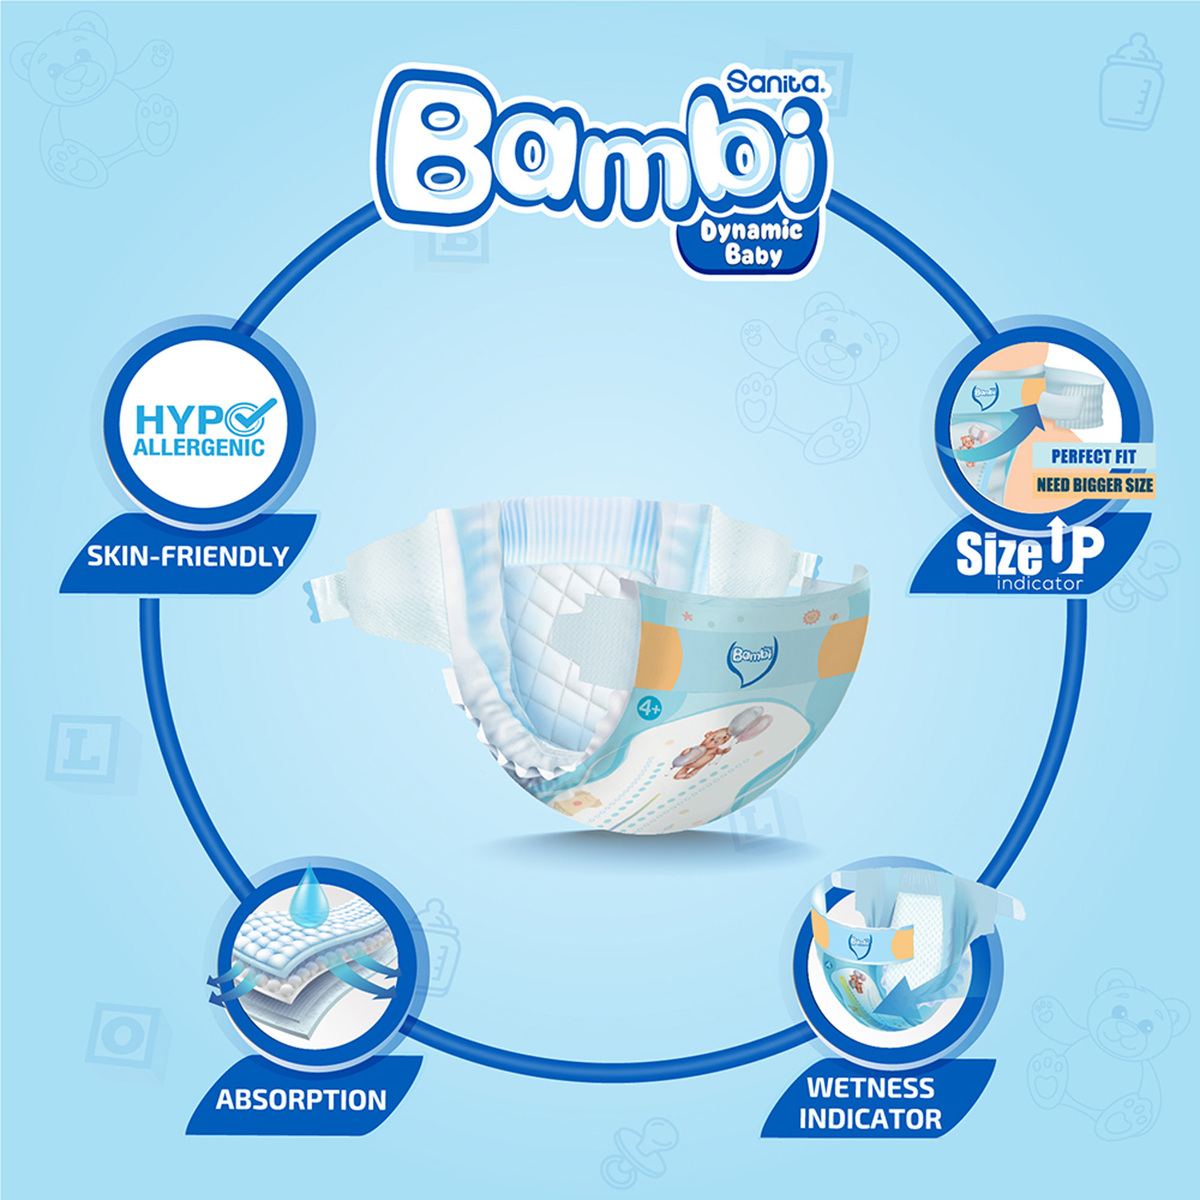 Sanita Bambi Baby Diaper Jumbo Pack Size 4+ Large Plus 10-18kg 58 pcs